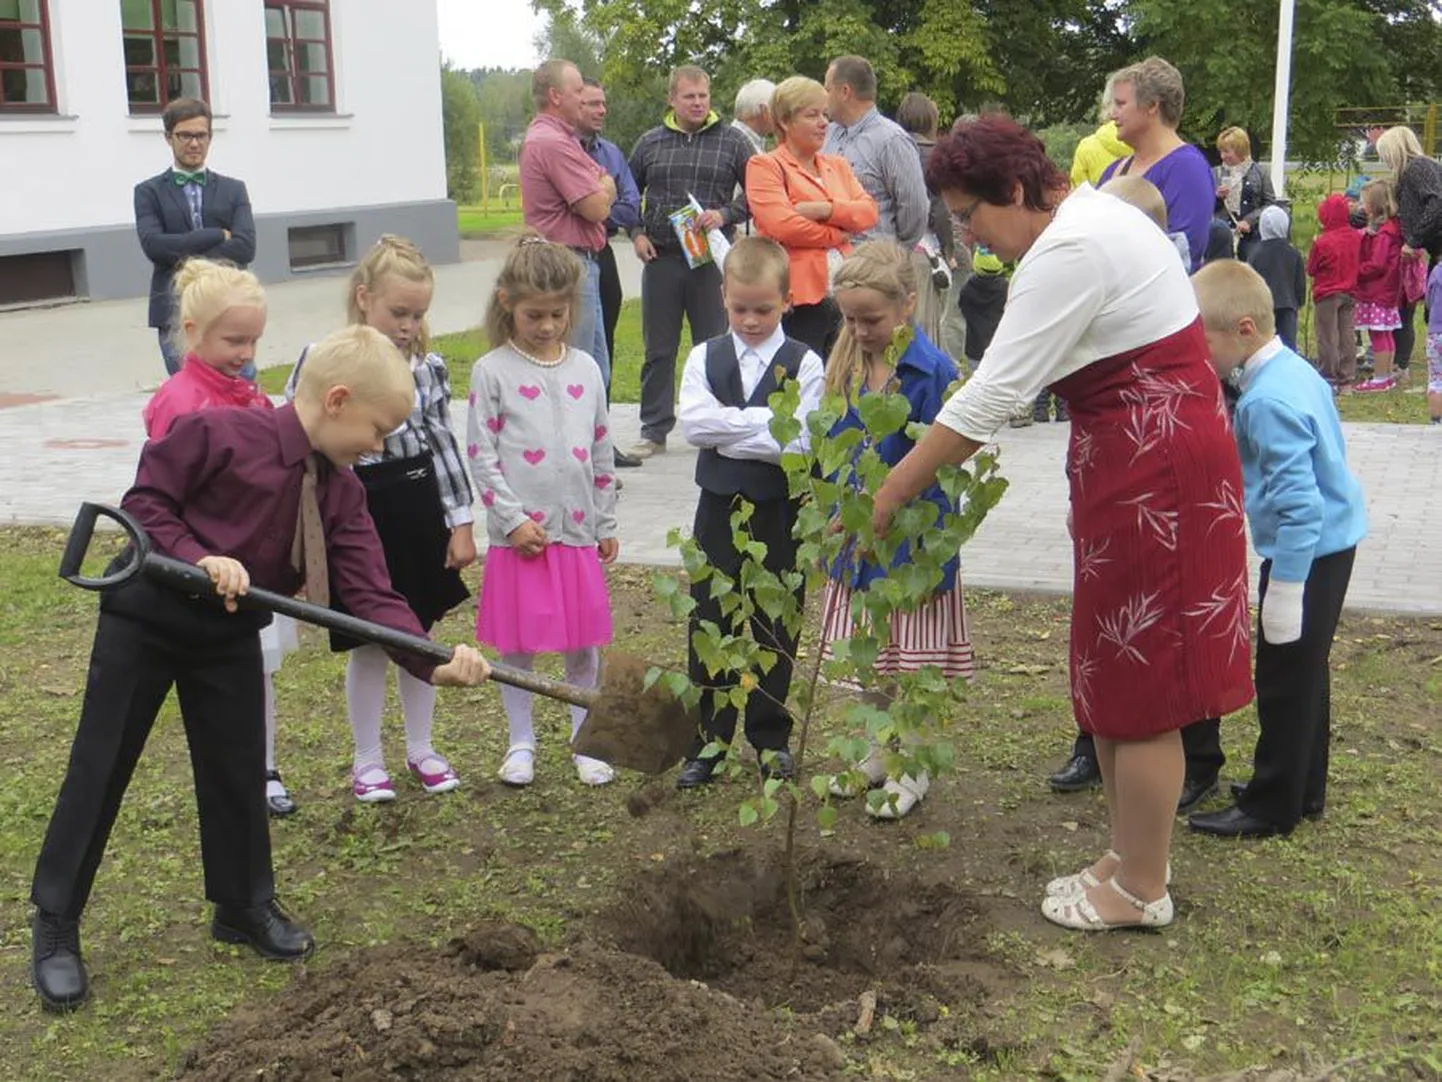 1. septembril istutasid Paistu kooli lapsed alleele uued kased. Labidaga töötab esimese klassi õpilane Rikko Riiner, teda abistab klassijuhataja Koidu Vaks.